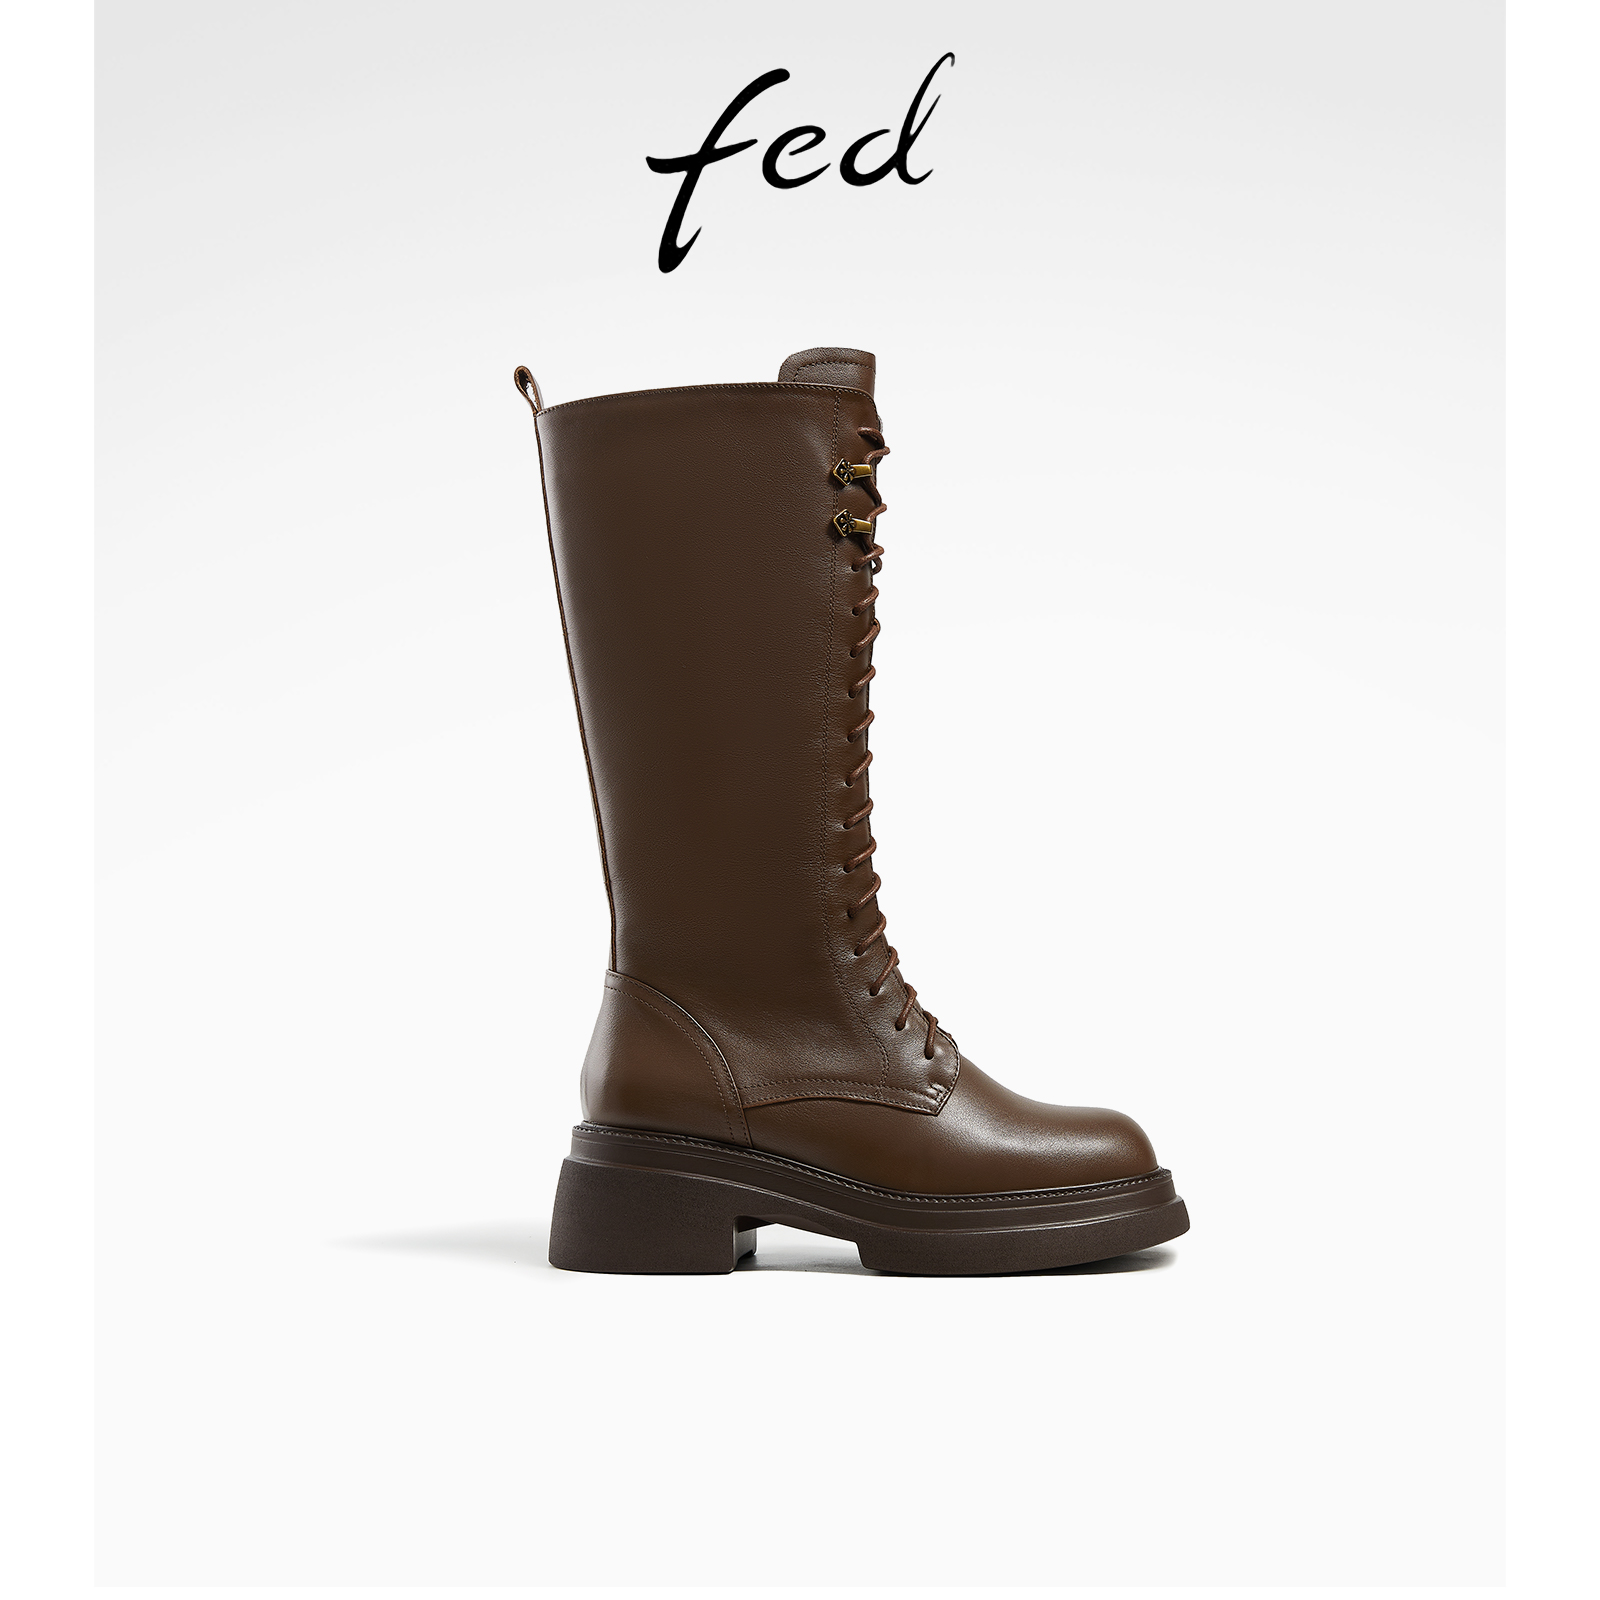 fed真皮长靴冬季新款靴子厚底骑士靴粗跟时装靴女款R1004-ZFA911